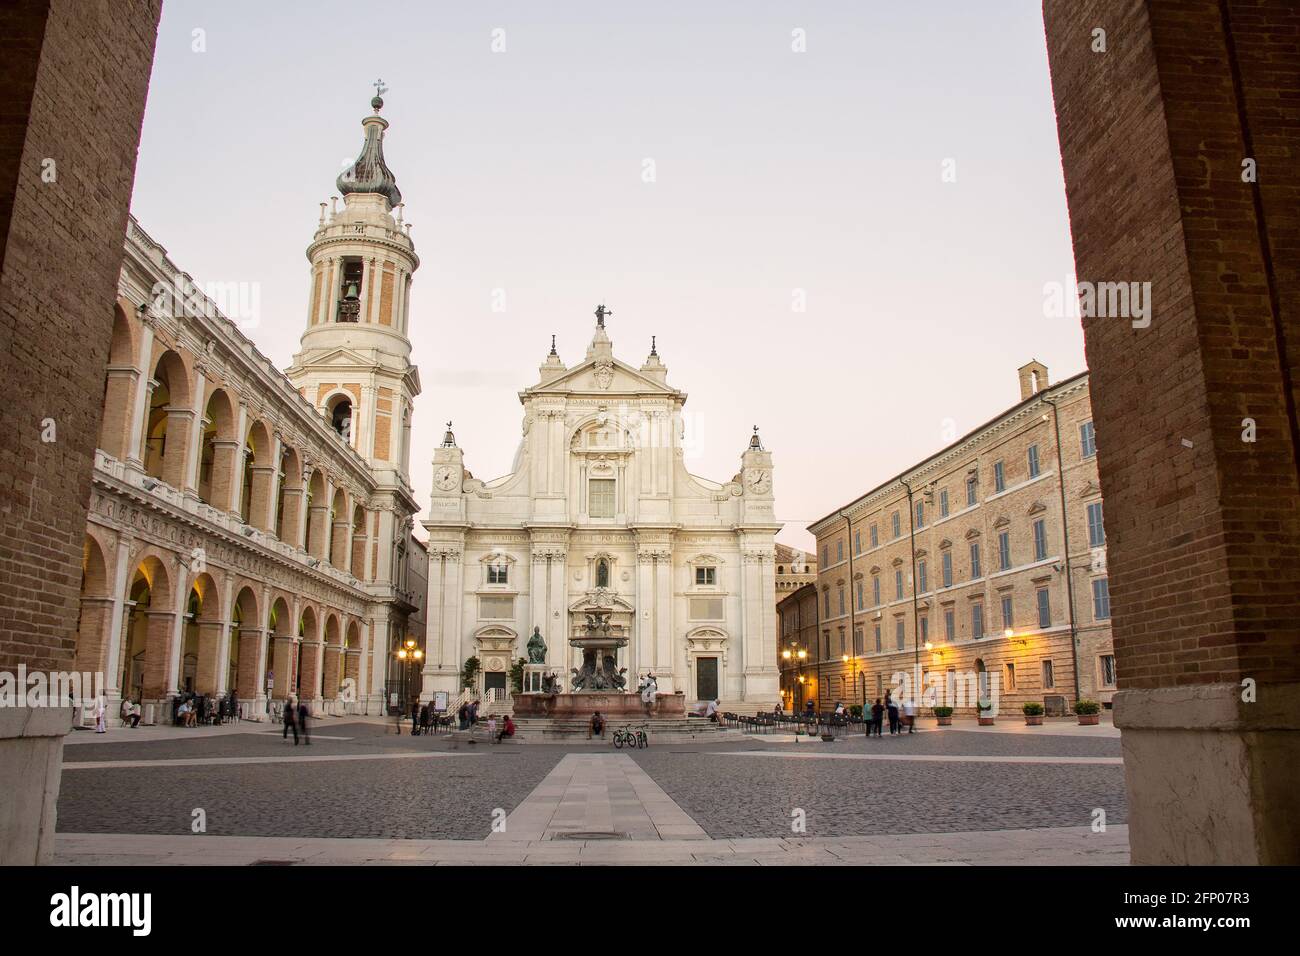 Loreto, Marche, province of Ancona. Piazza della Madonna with the facade of the Basilica di Santa Casa , a popular pilgrimage site for Catholics Stock Photo